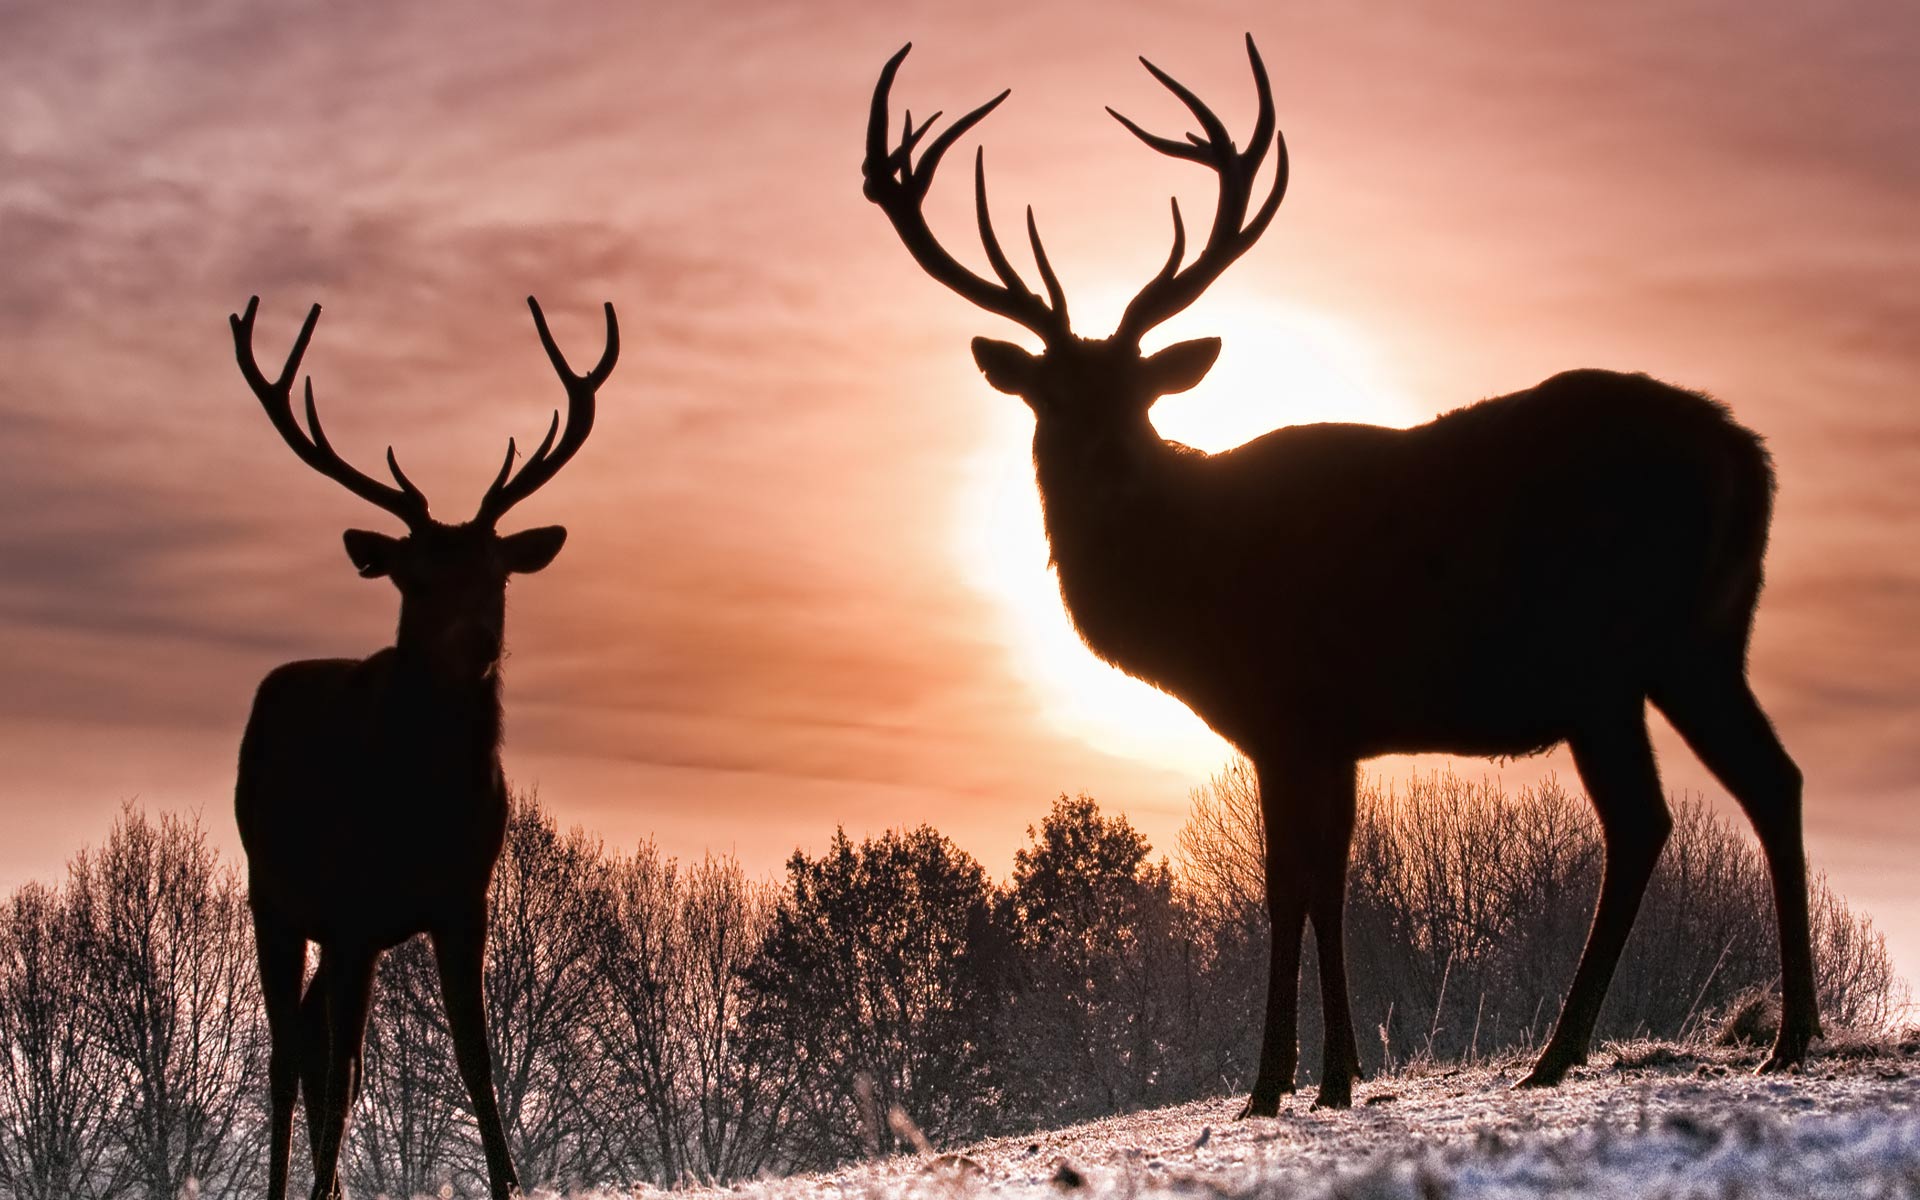 Desktop Wallpaper · Gallery · Animals · Young deer buck | Free ...